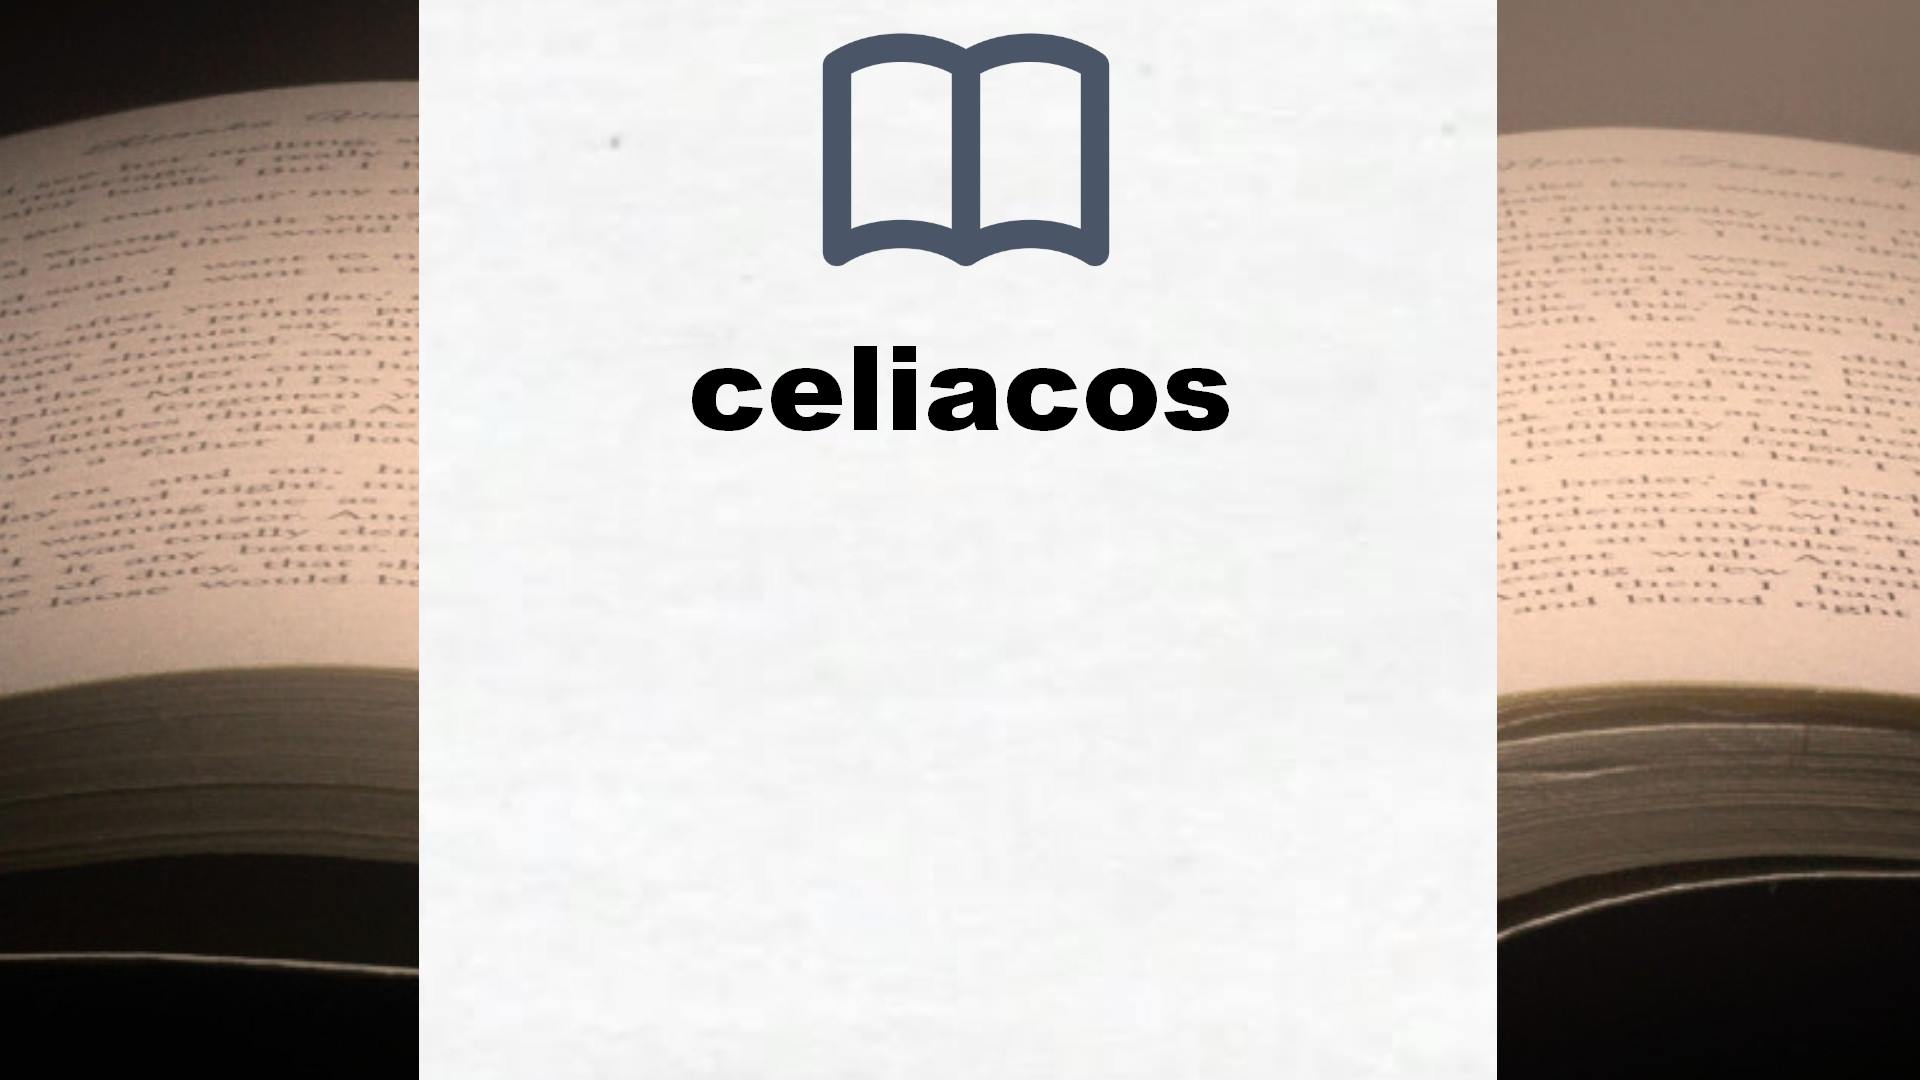 Libros sobre celiacos